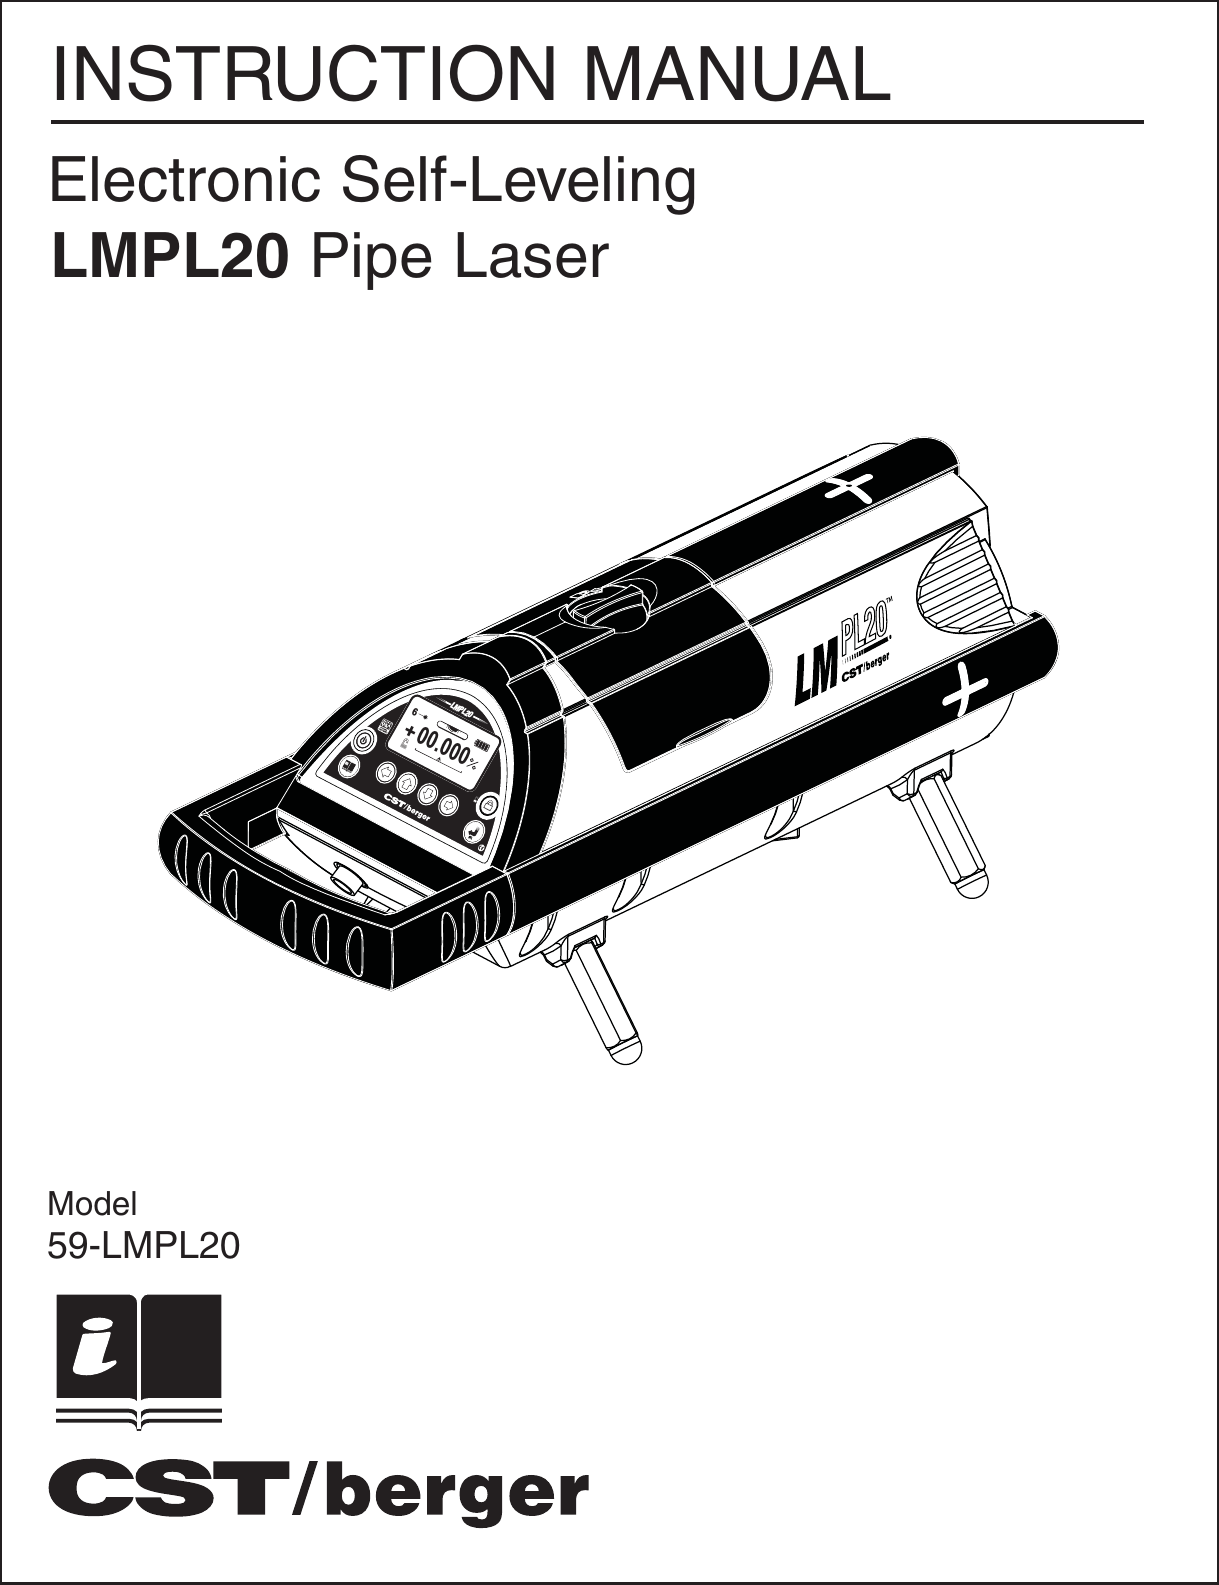 LMPL20LMPL20LMPL20mSEL00.0006+LMPL20 Pipe LaserModel59-LMPL20   INSTRUCTION MANUALElectronic Self-Leveling 